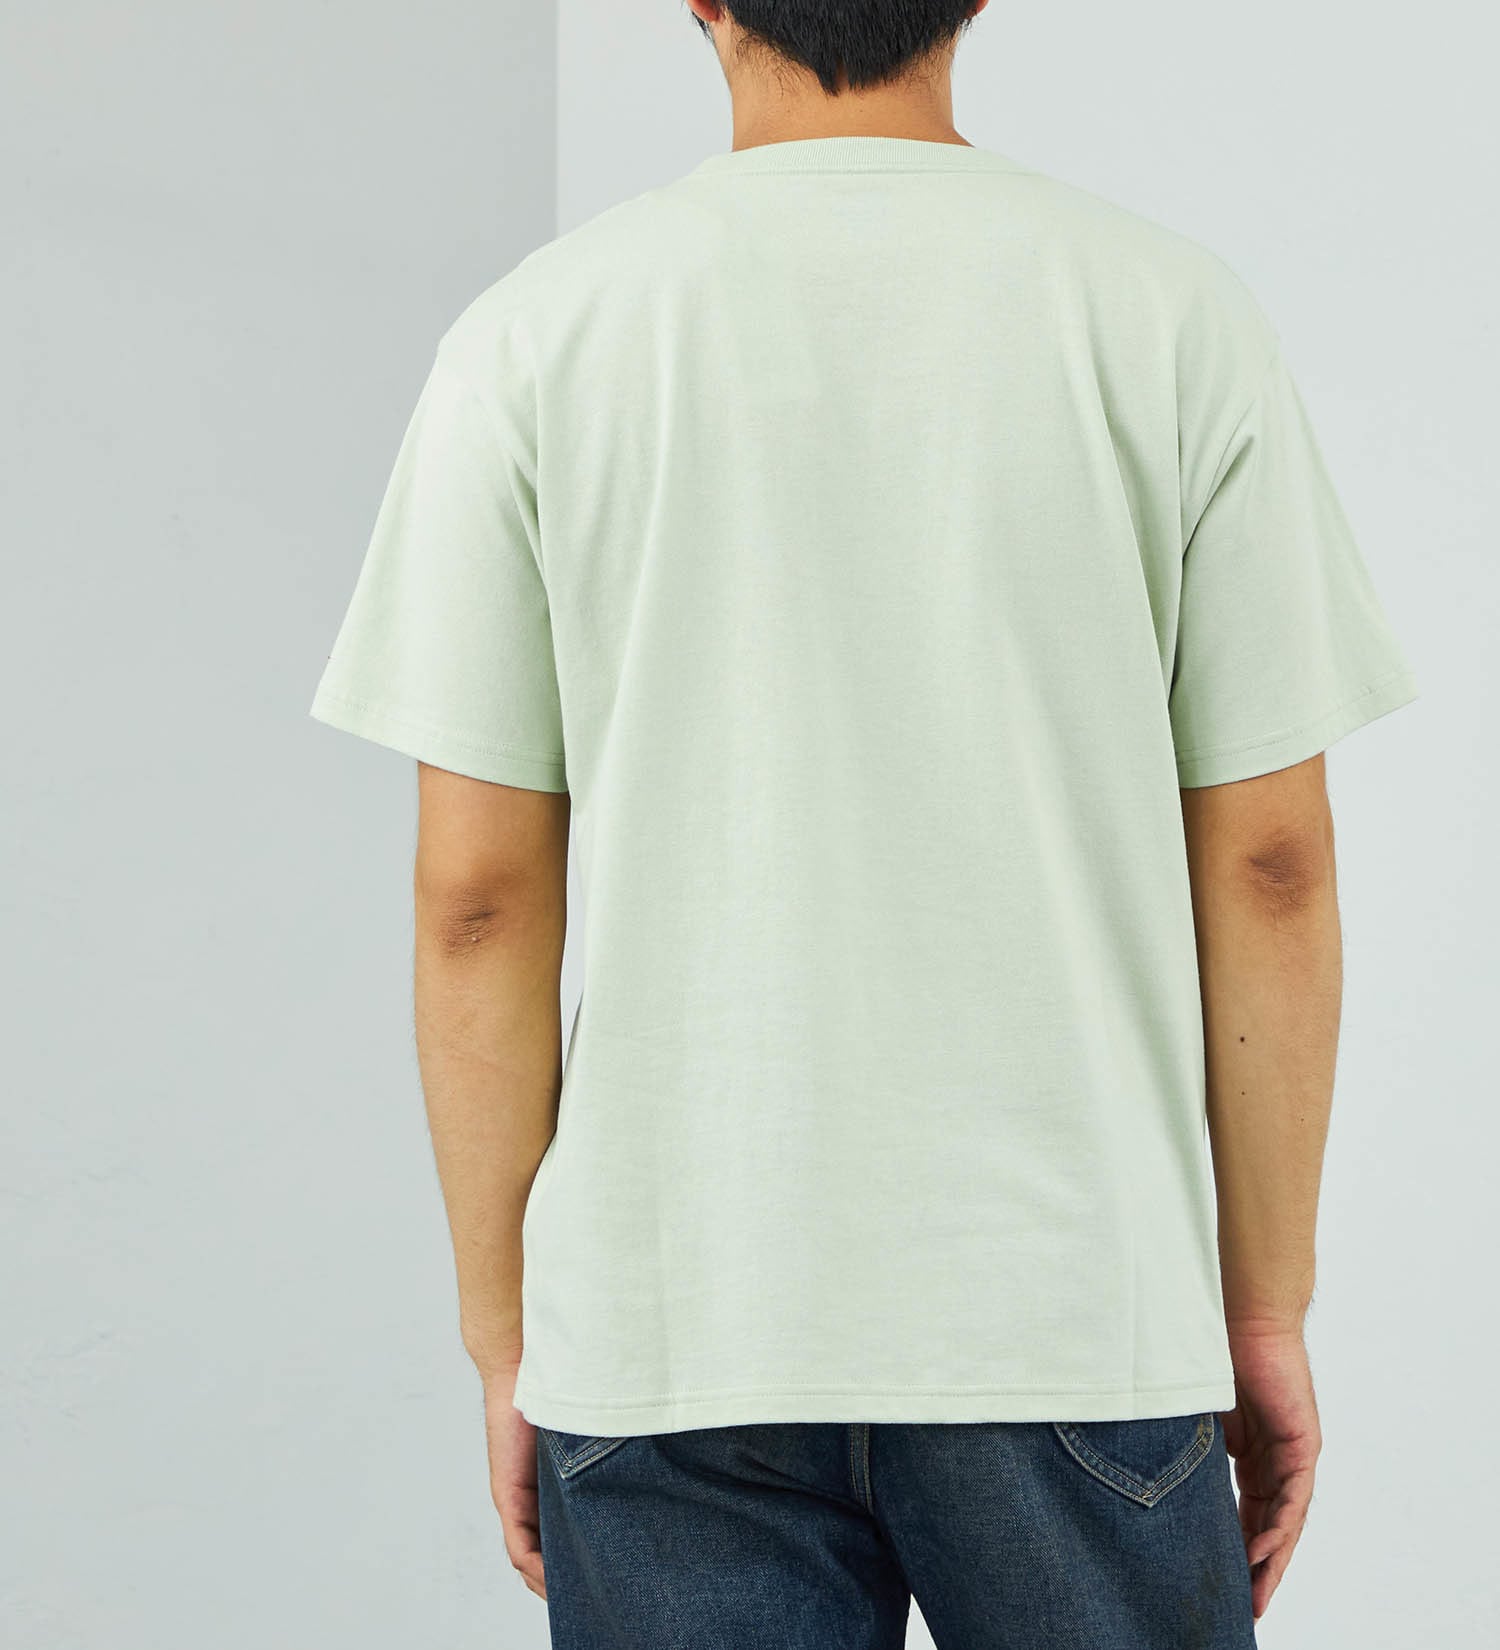 Lee(リー)の【SUMMER SALE】Leeロゴポケット刺繍Tシャツ|トップス/Tシャツ/カットソー/メンズ|ミント